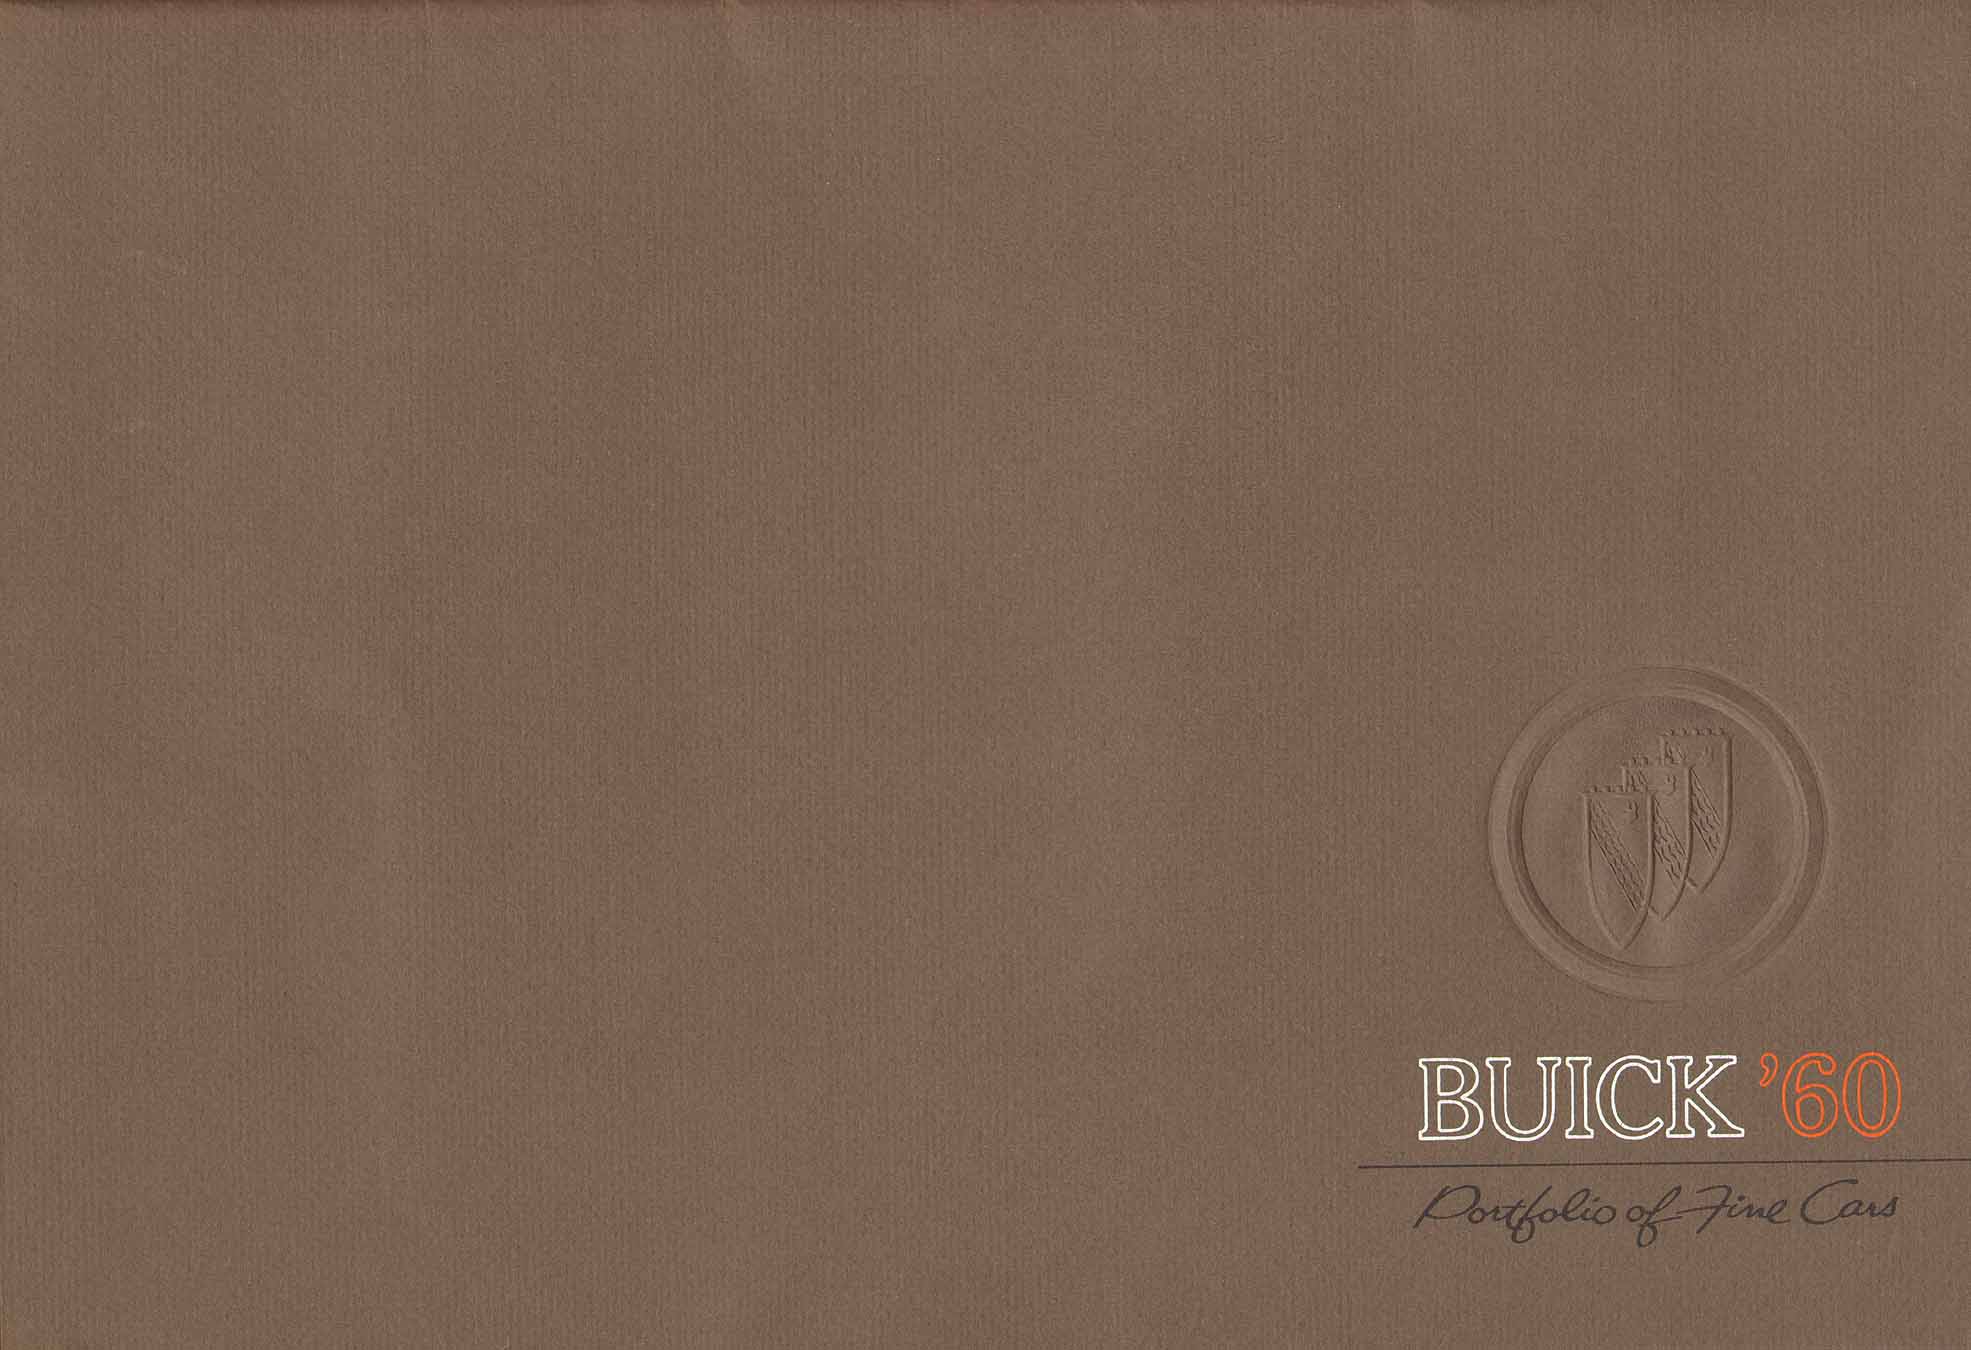 1960 Buick Prestige Portfolio-01